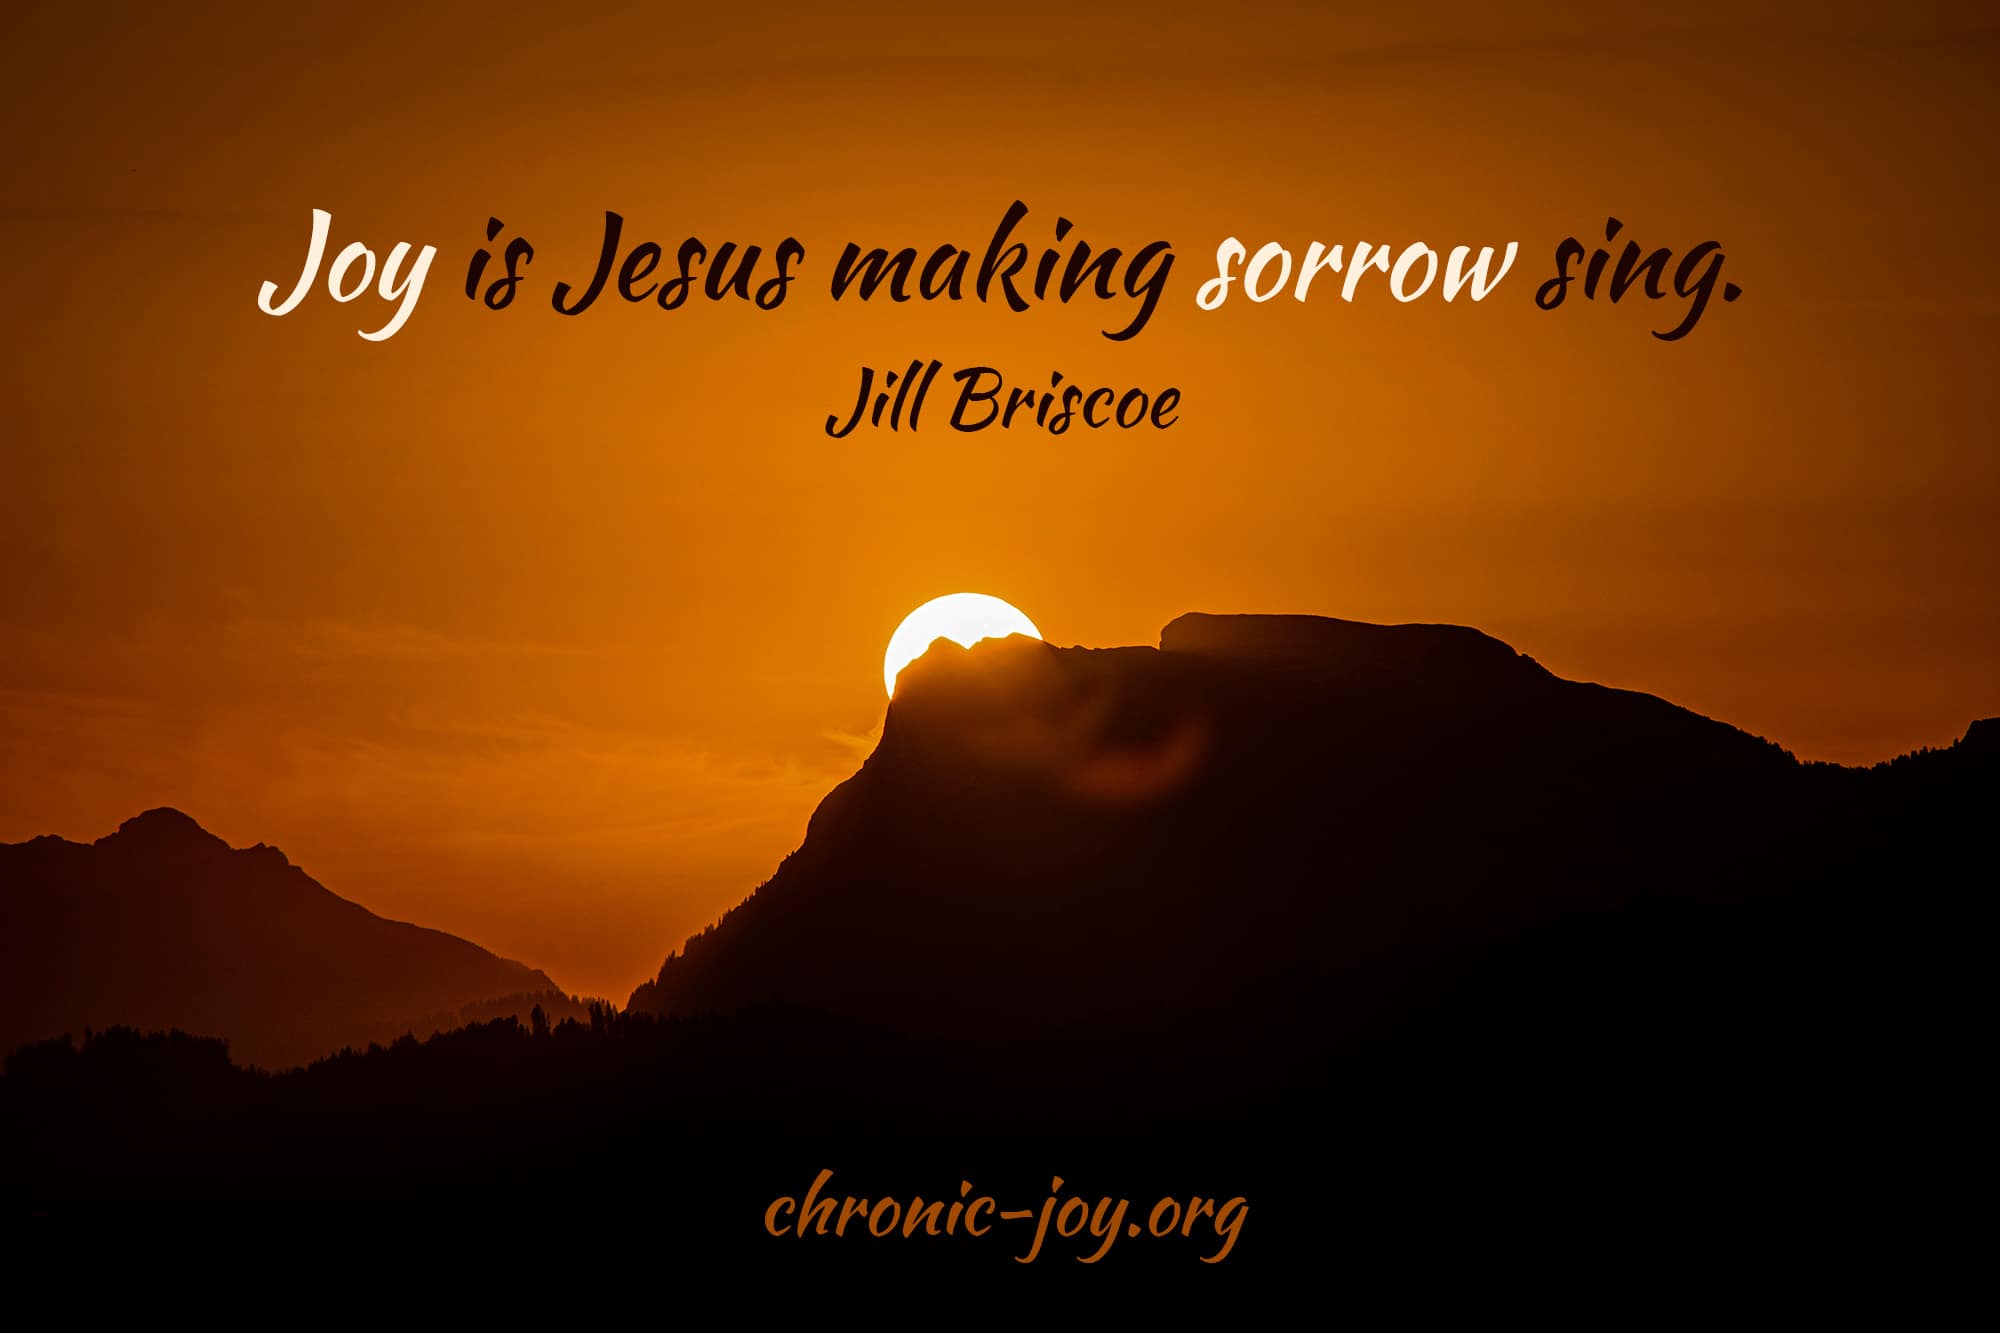 “Joy is Jesus making sorrow sing.” Jill Briscoe